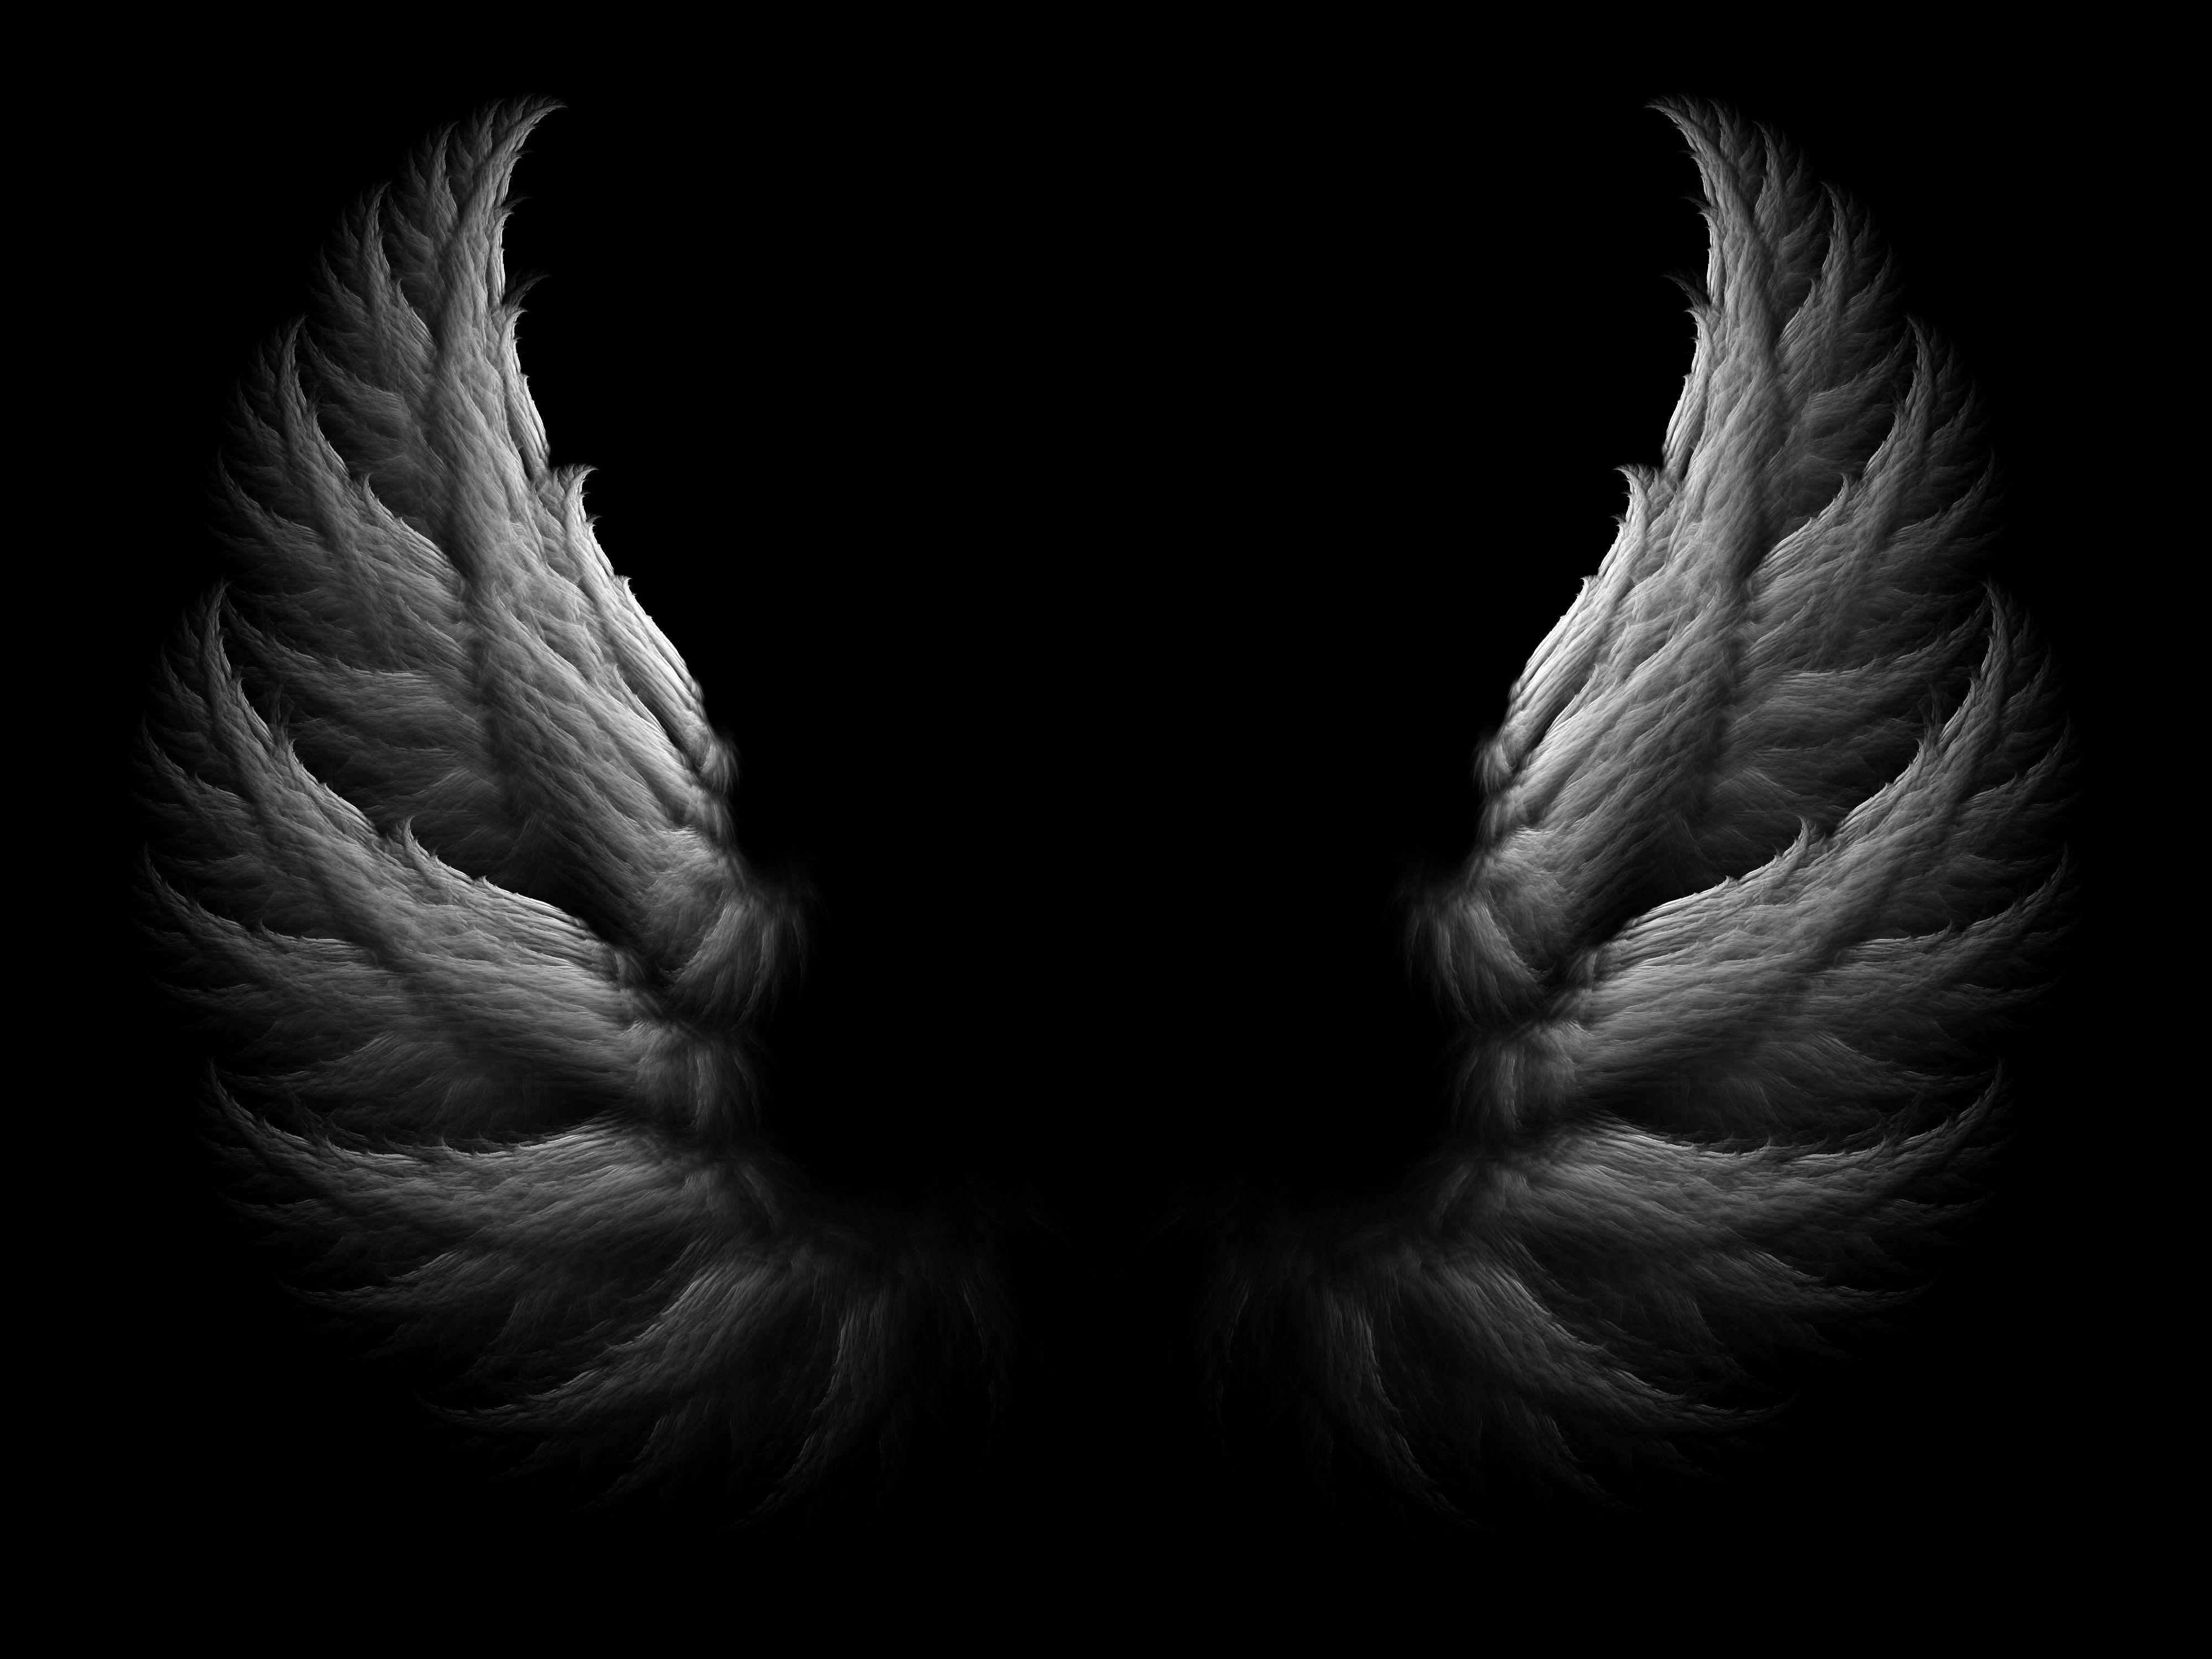 Black Angel Wings Wallpaper